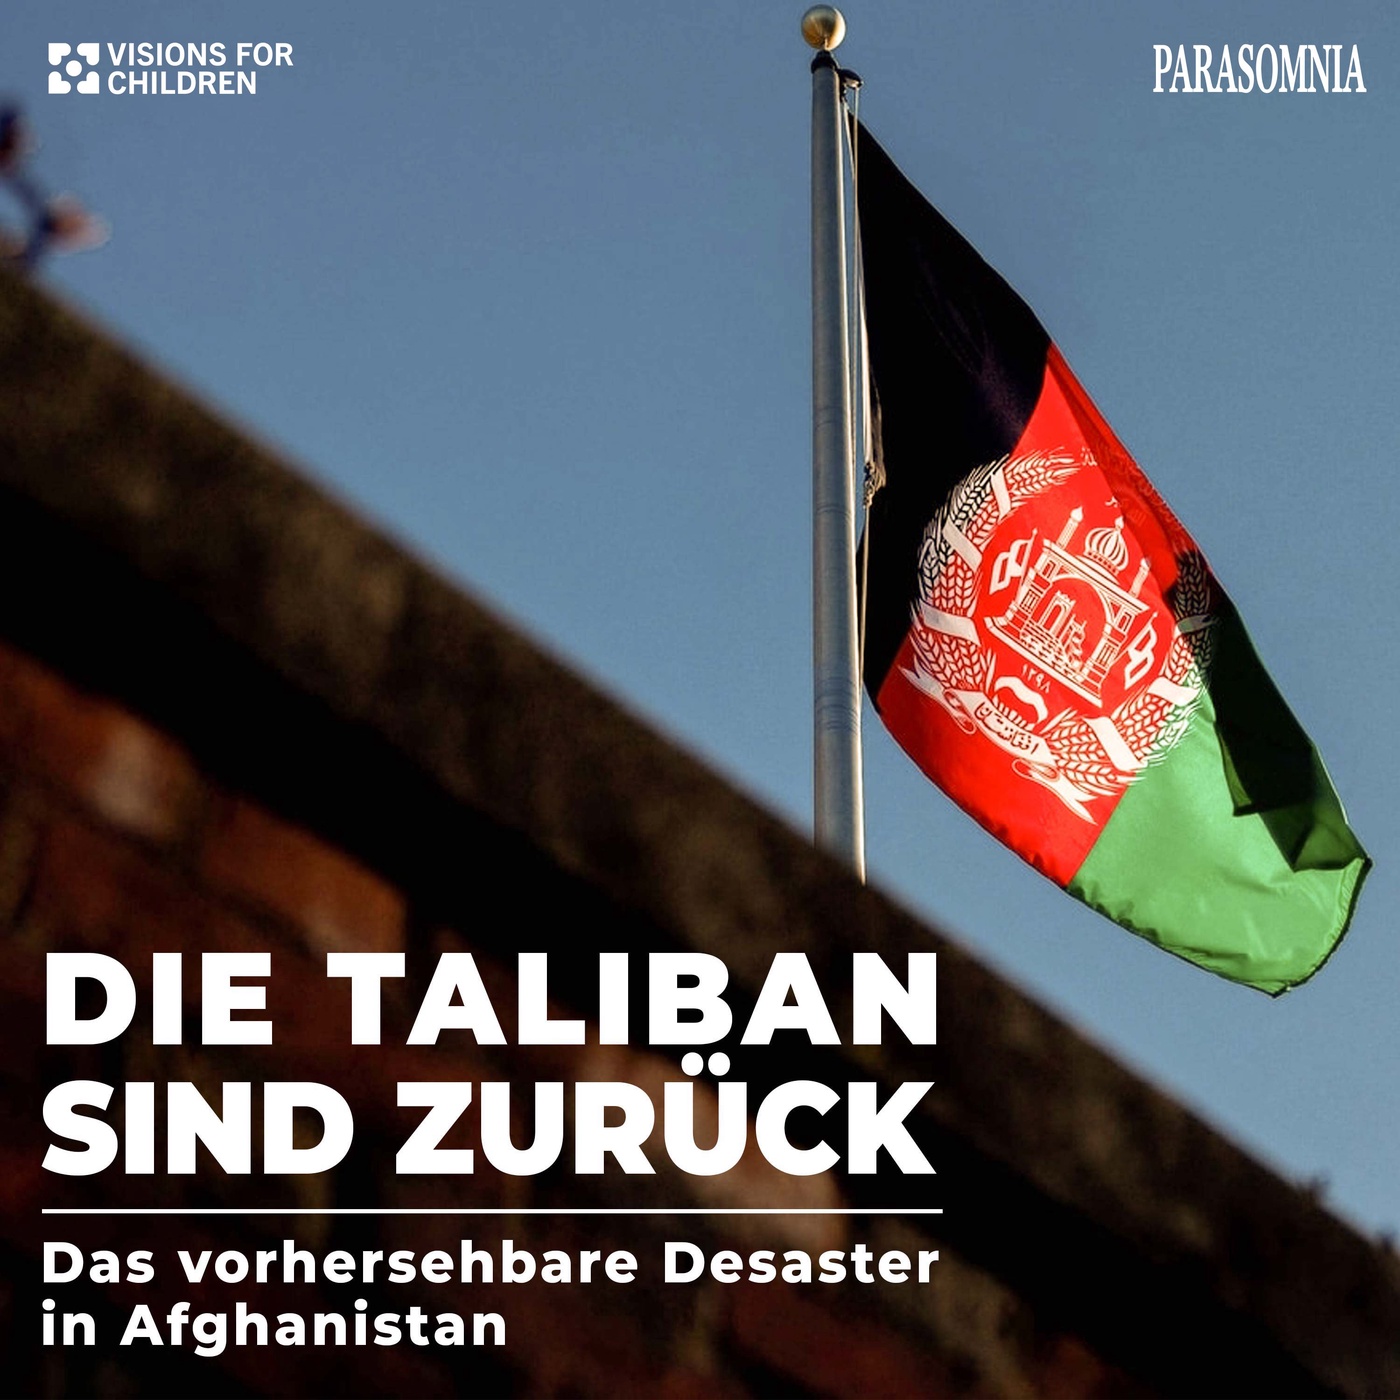 Die Taliban sind zurück - das vorhersehbare Desaster in Afghanistan